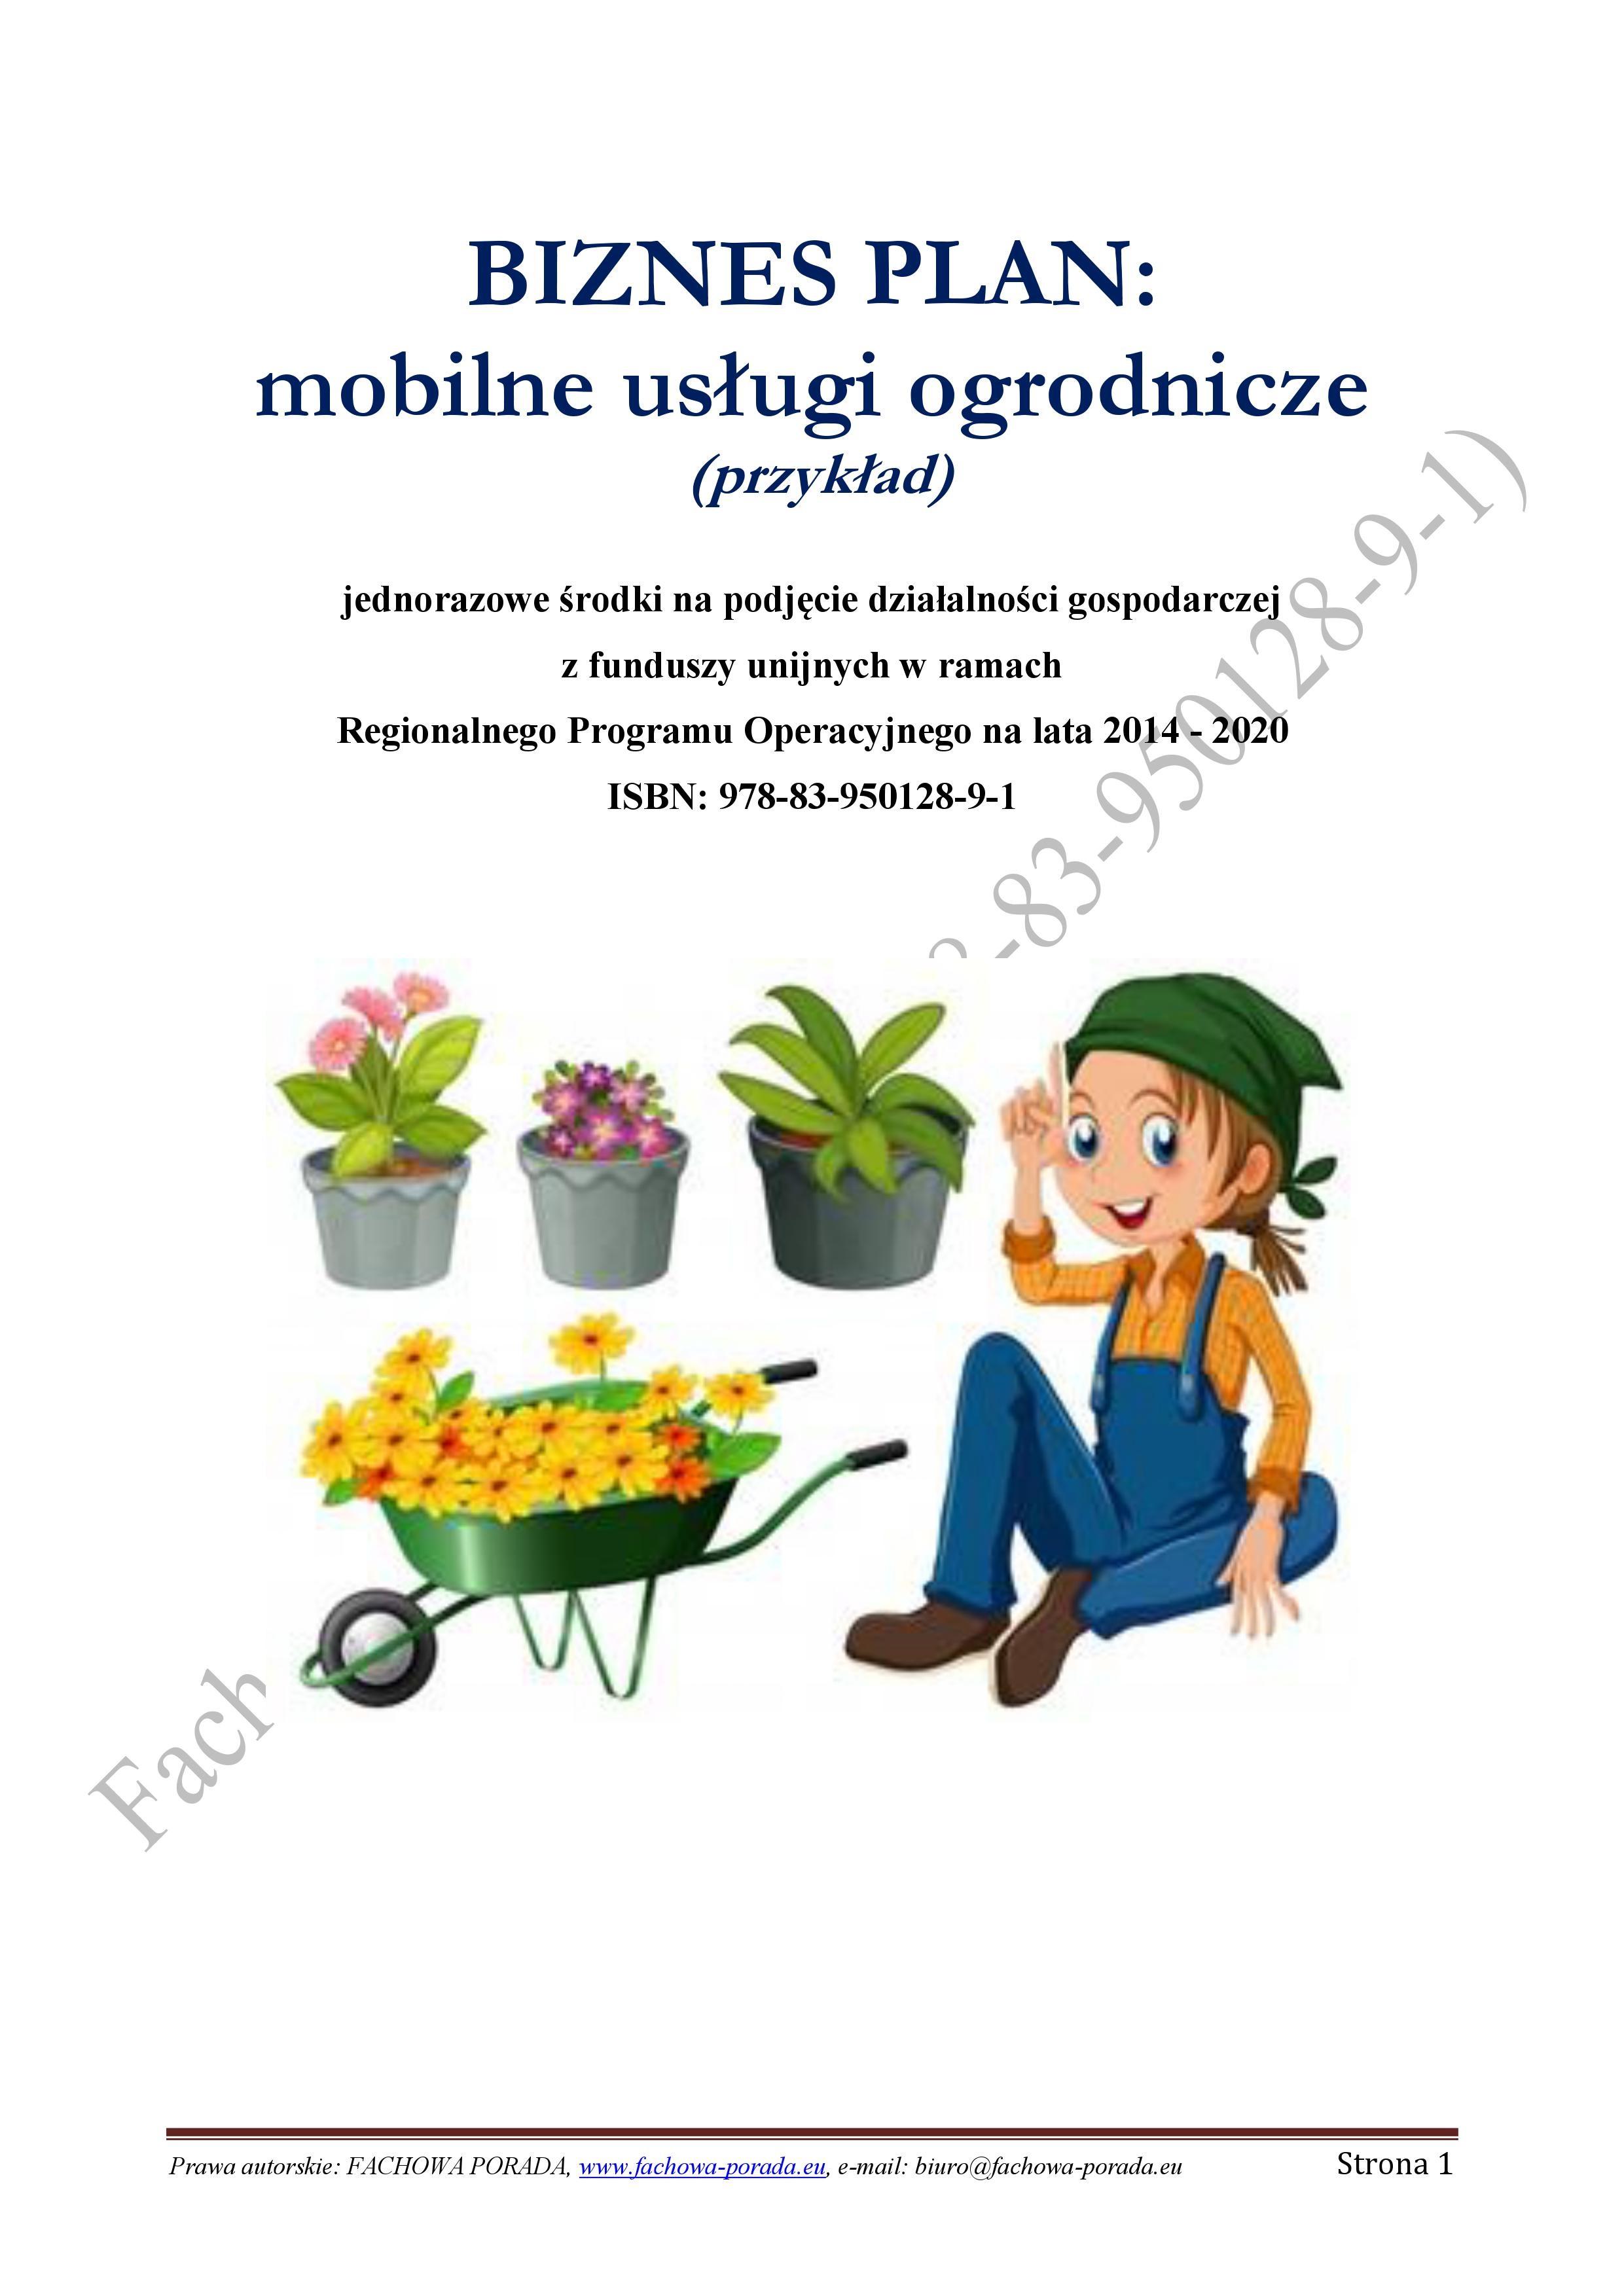 BIZNESPLAN mobilne usługi ogrodnicze (przykład) 2018